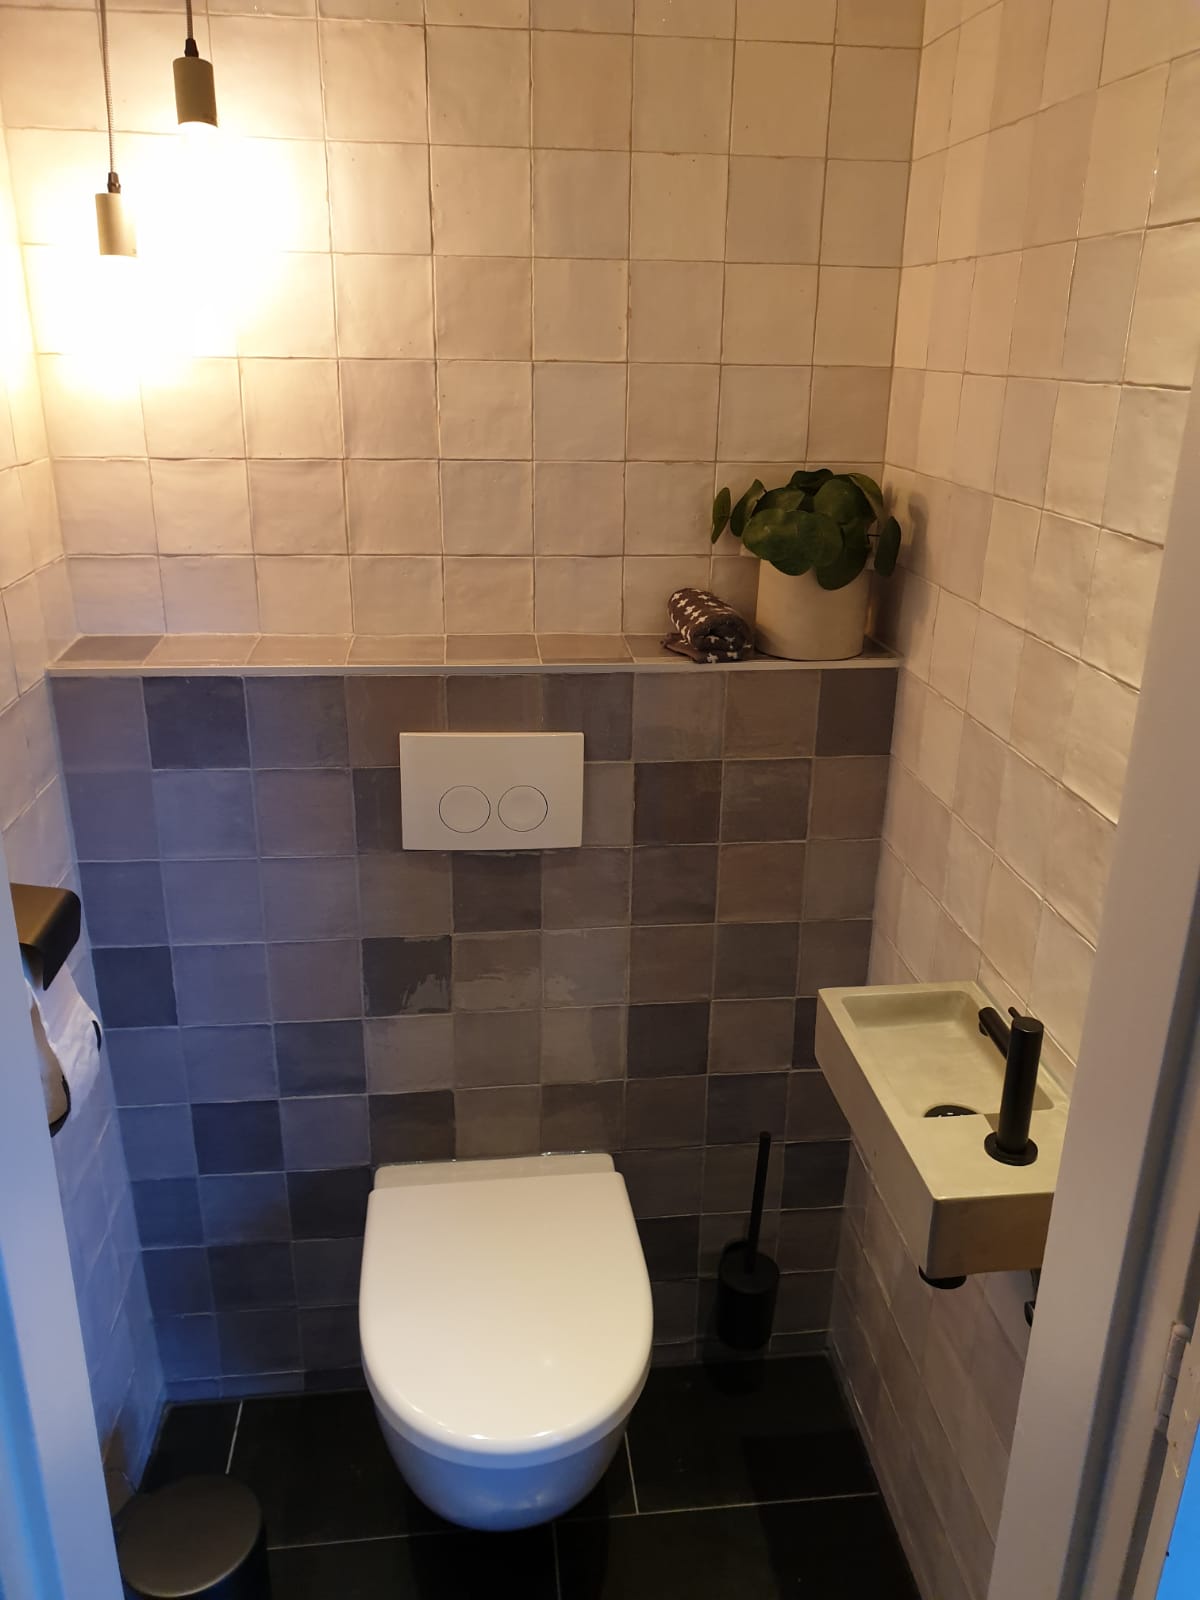 Toilet met bruine vierkante tegels